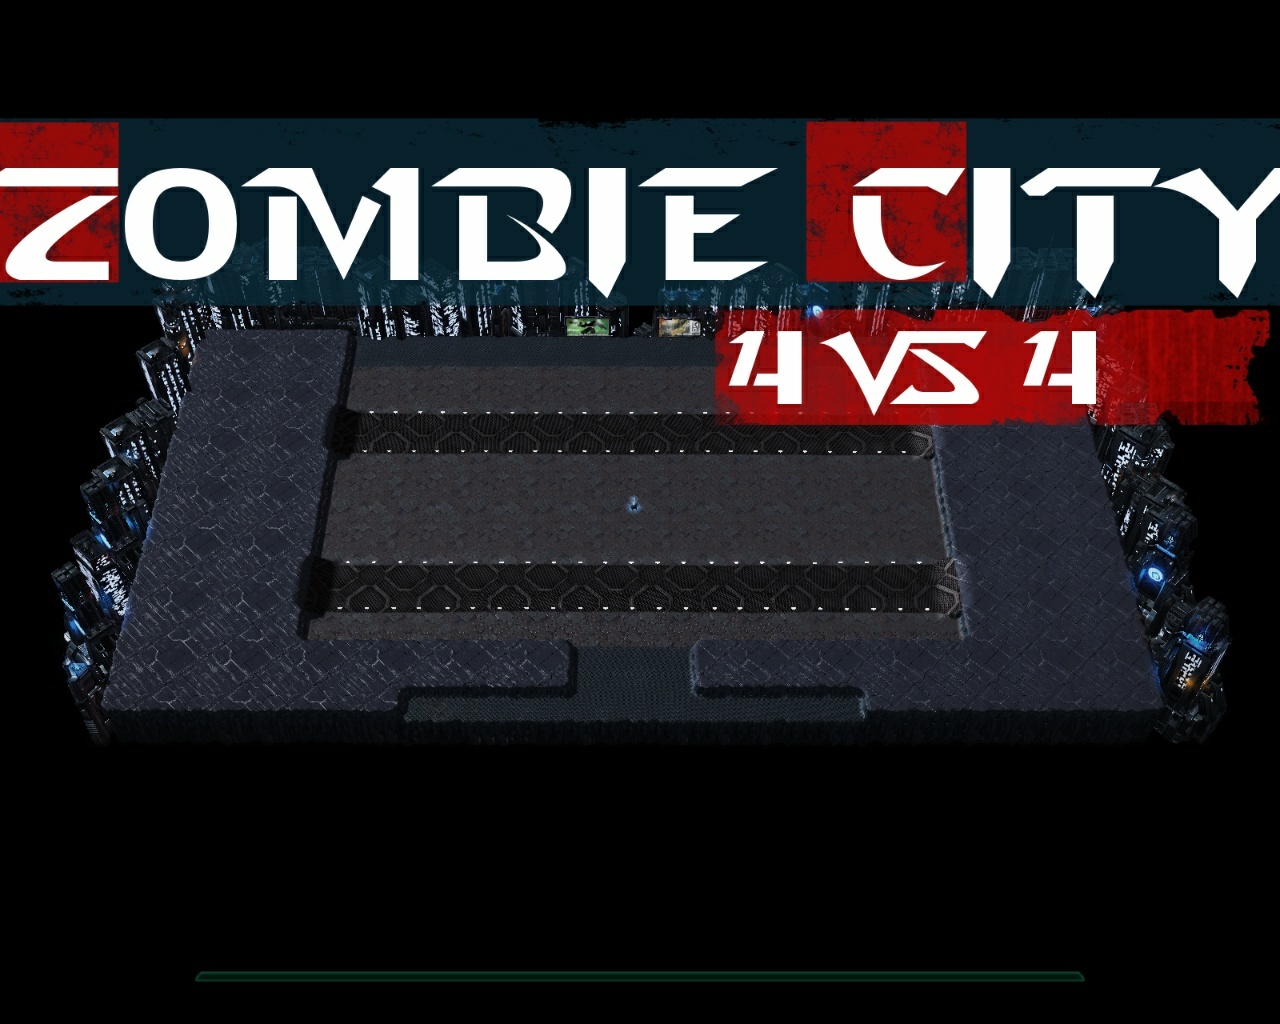 Zombie City 4 vs 4